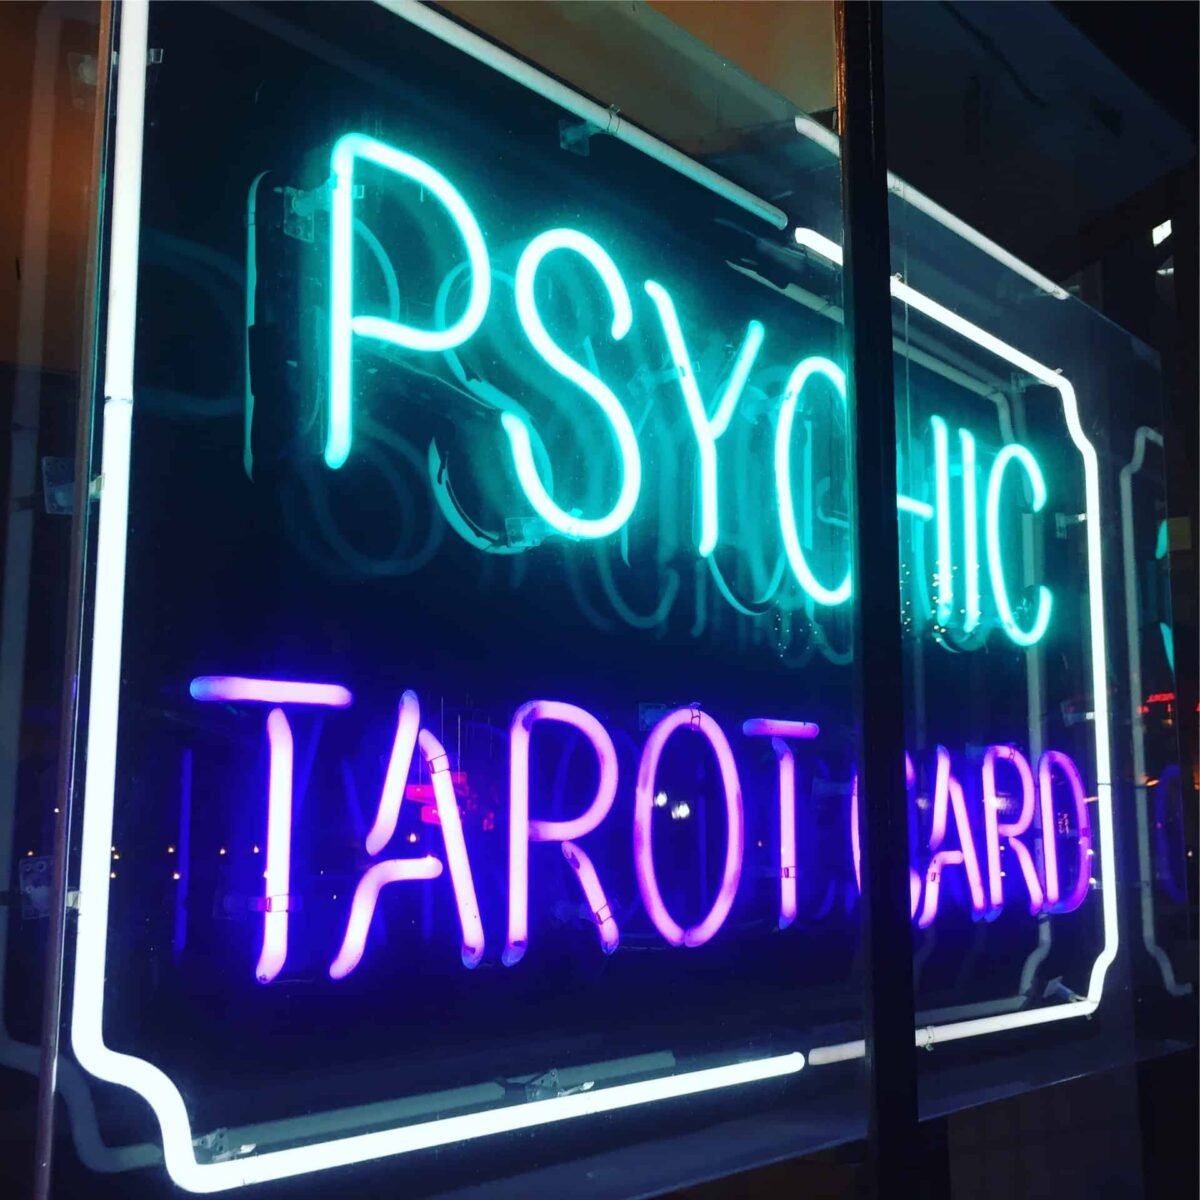 Psychic tarot card sign